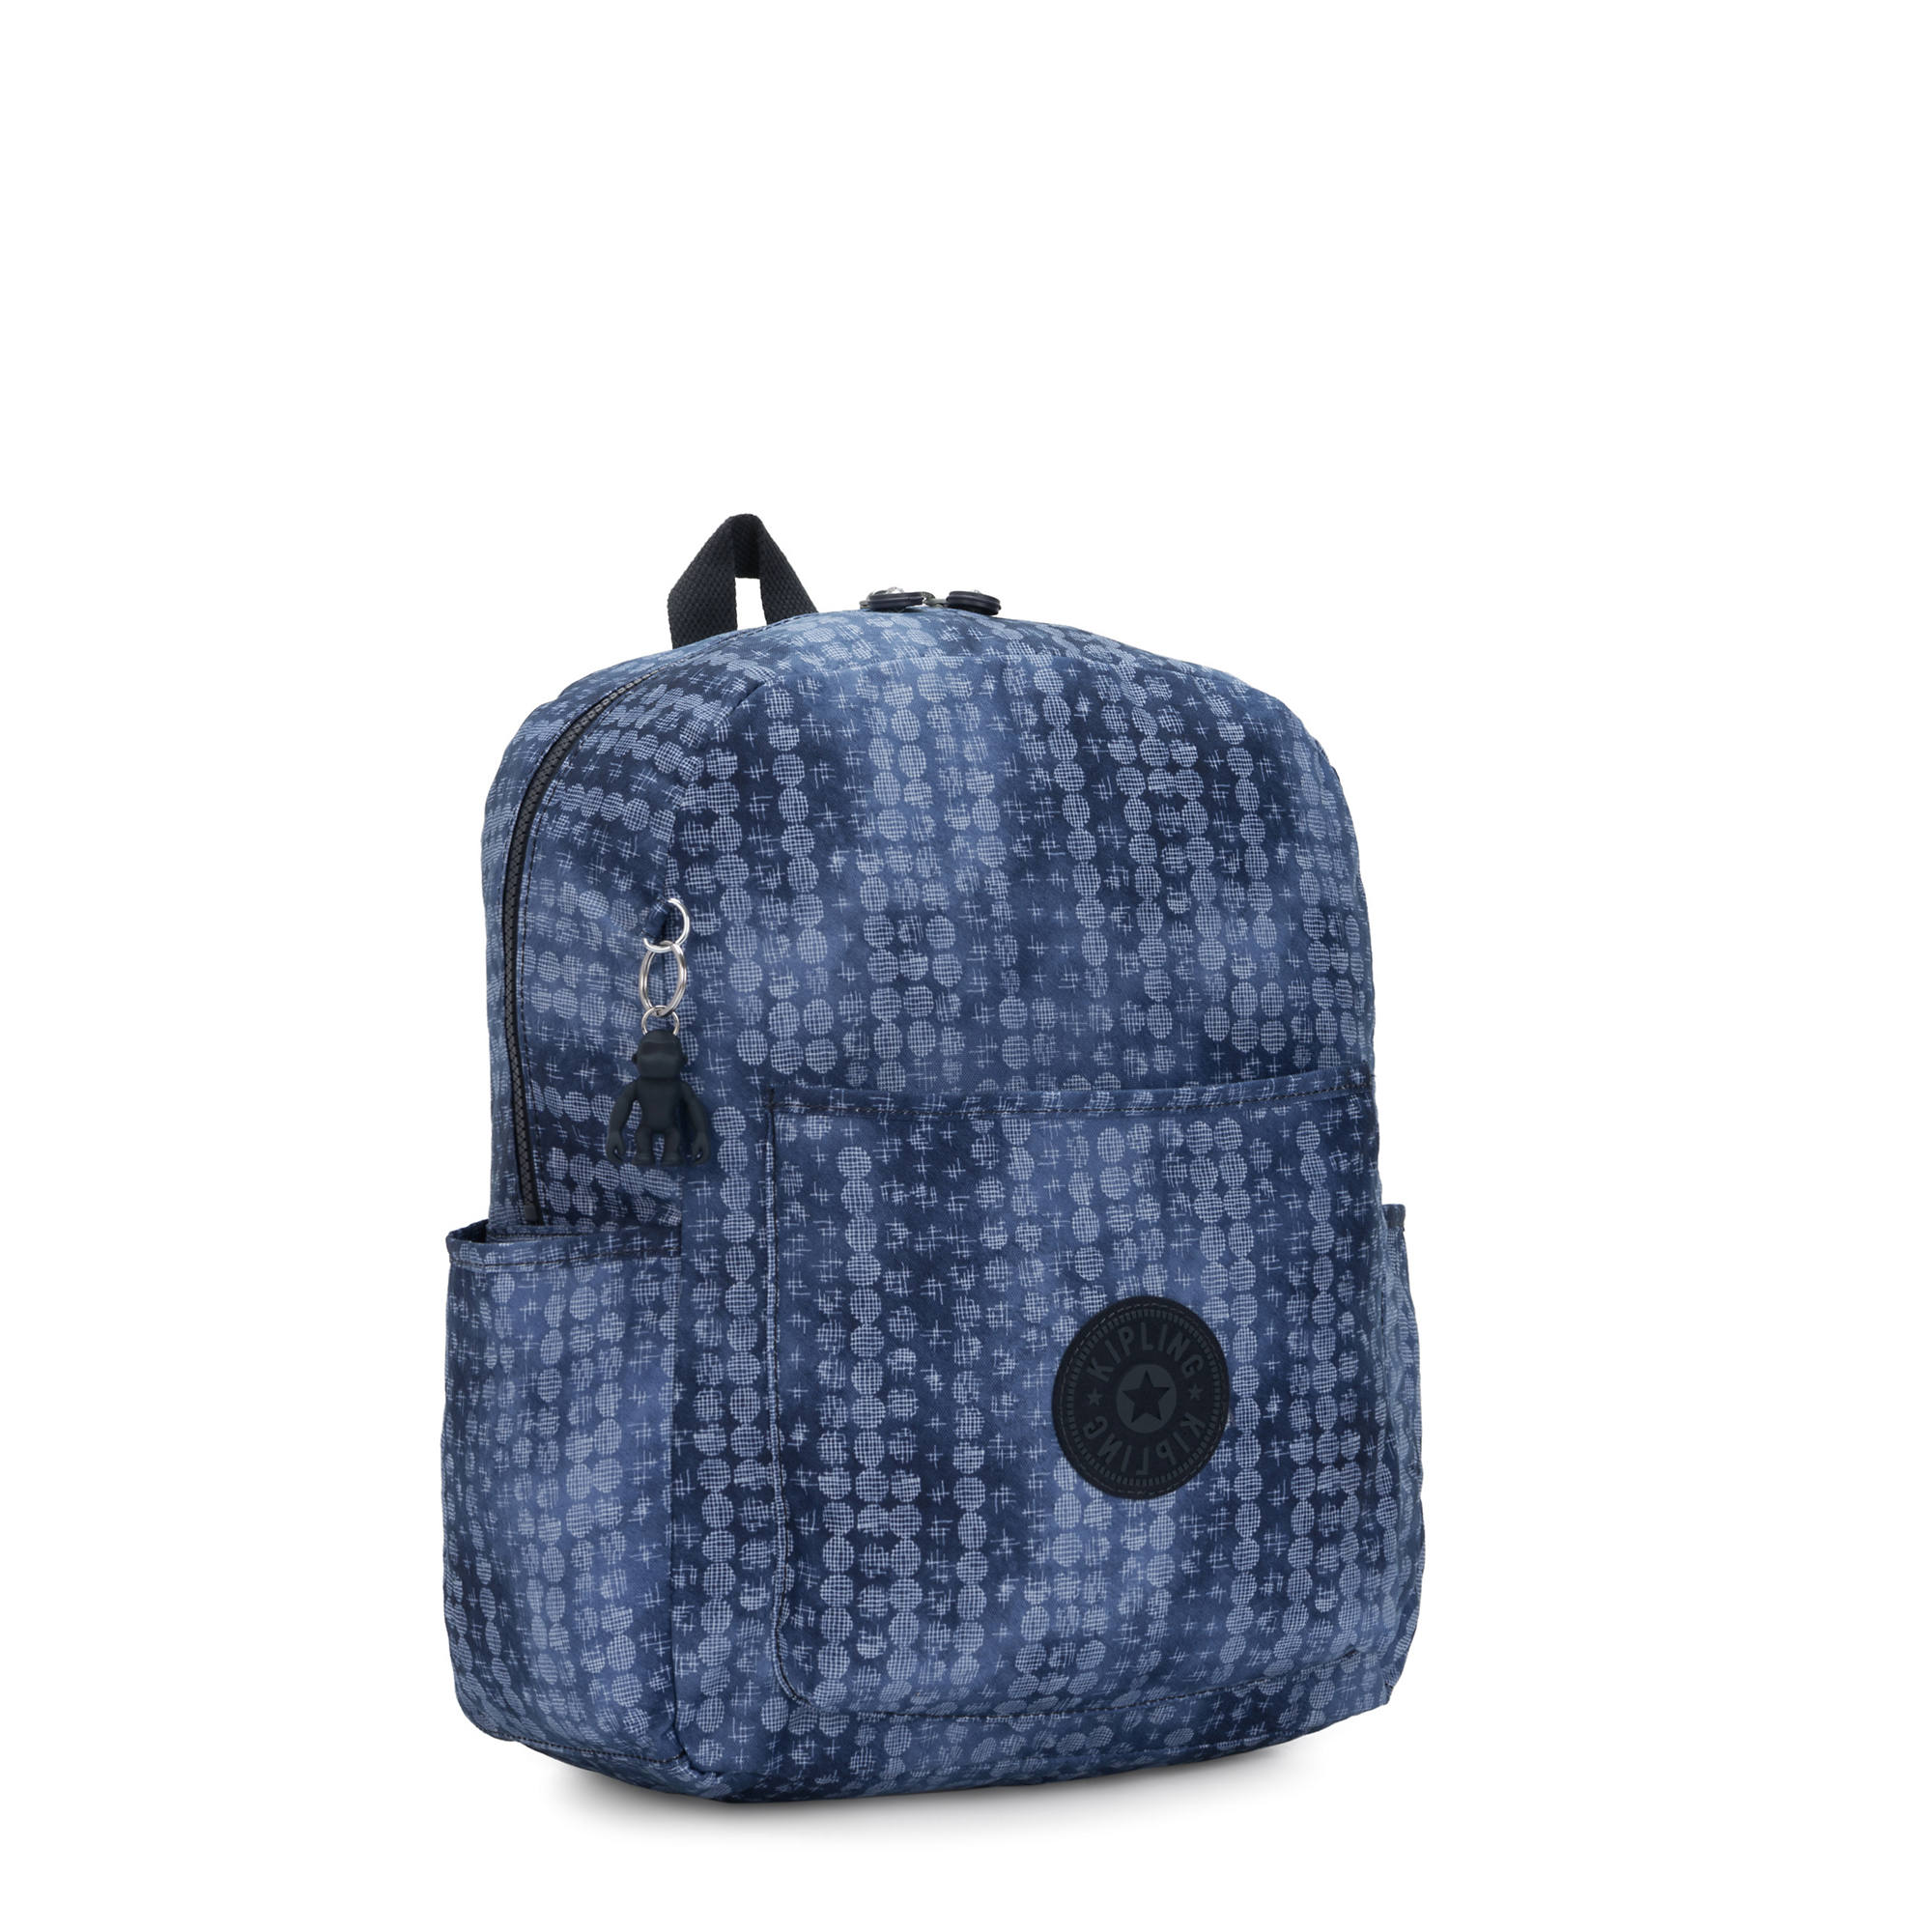 Kipling Bennett Medium Printed Backpack Casual Dot 882256457568 | eBay